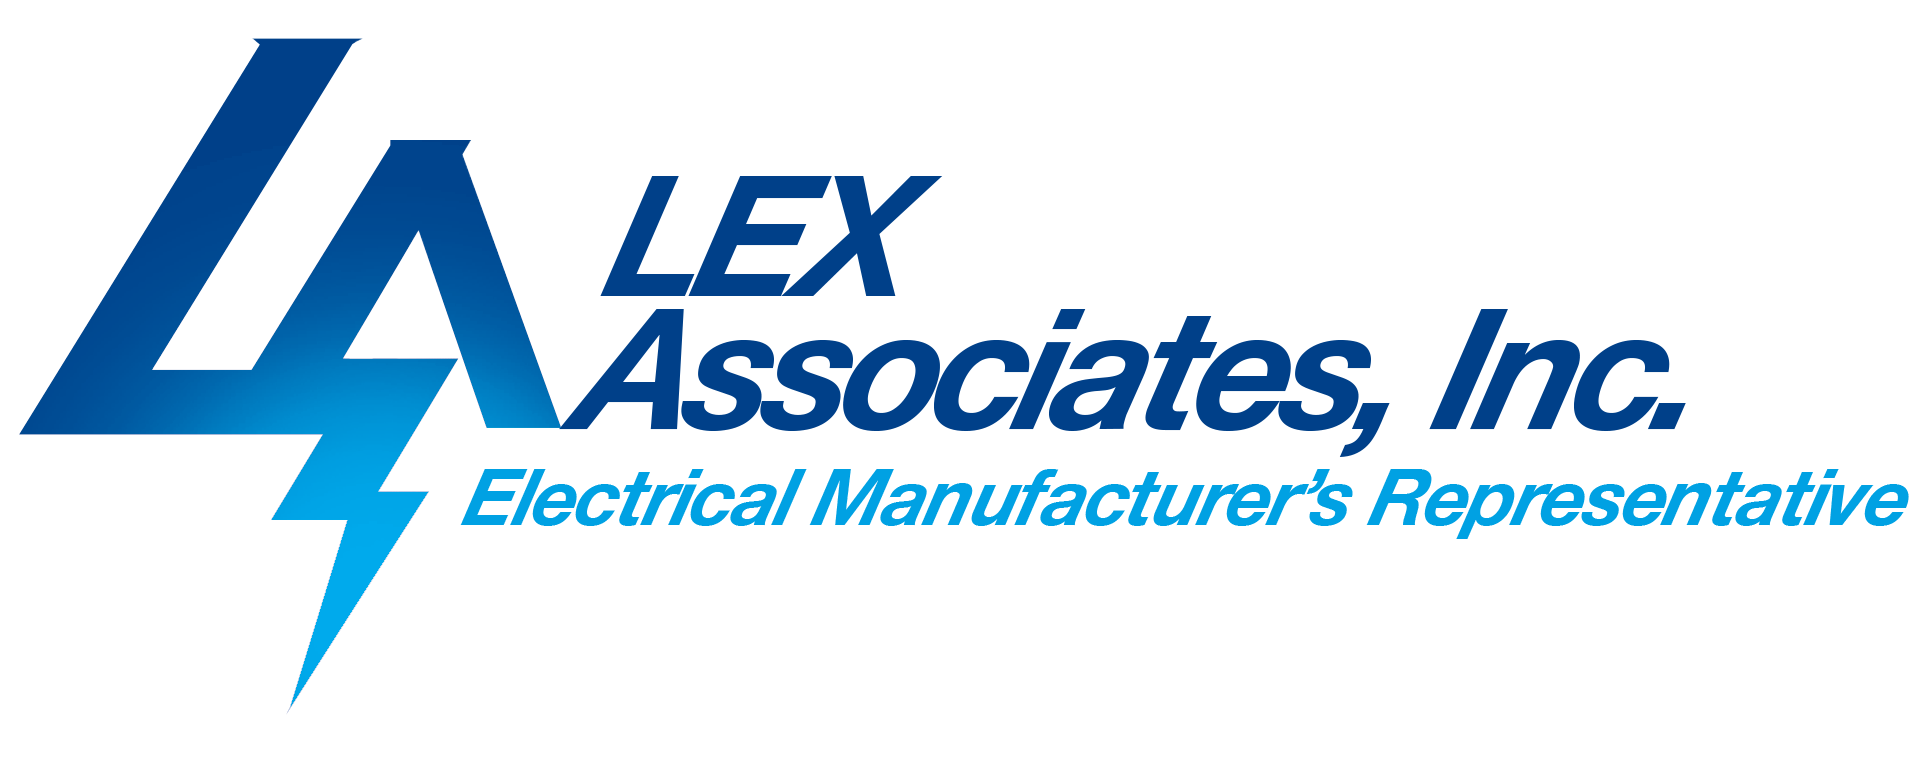 Lex Associates